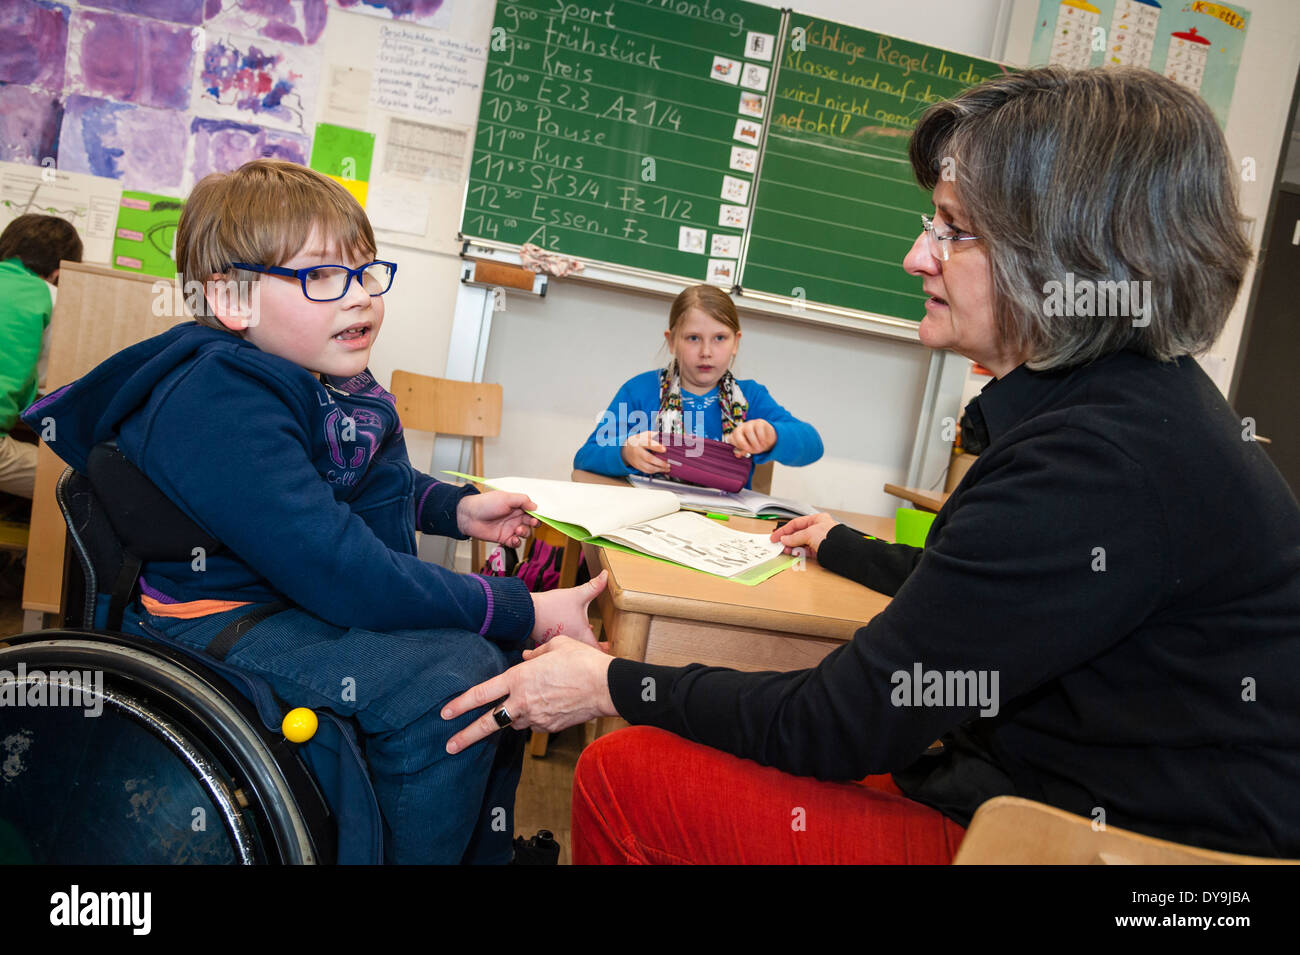 La non-mobilité et de mobilité des étudiants (dans ce cas un petit garçon dans un fauteuil roulant) apprendre ensemble dans la même classe dans une école primaire. Banque D'Images